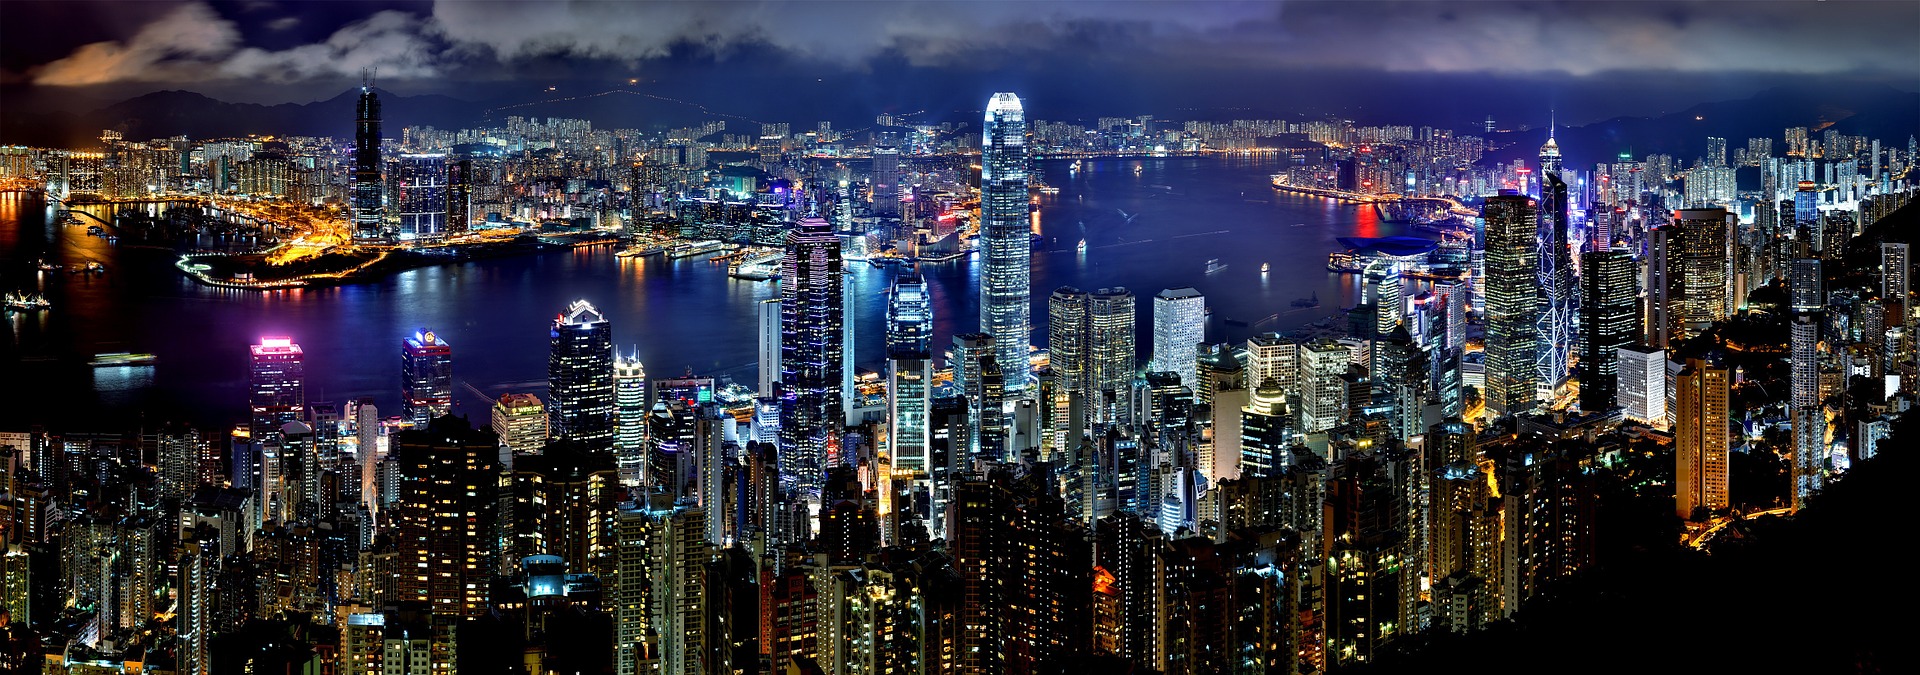 Skyline of Hong Kong; very fitting for Poker King.